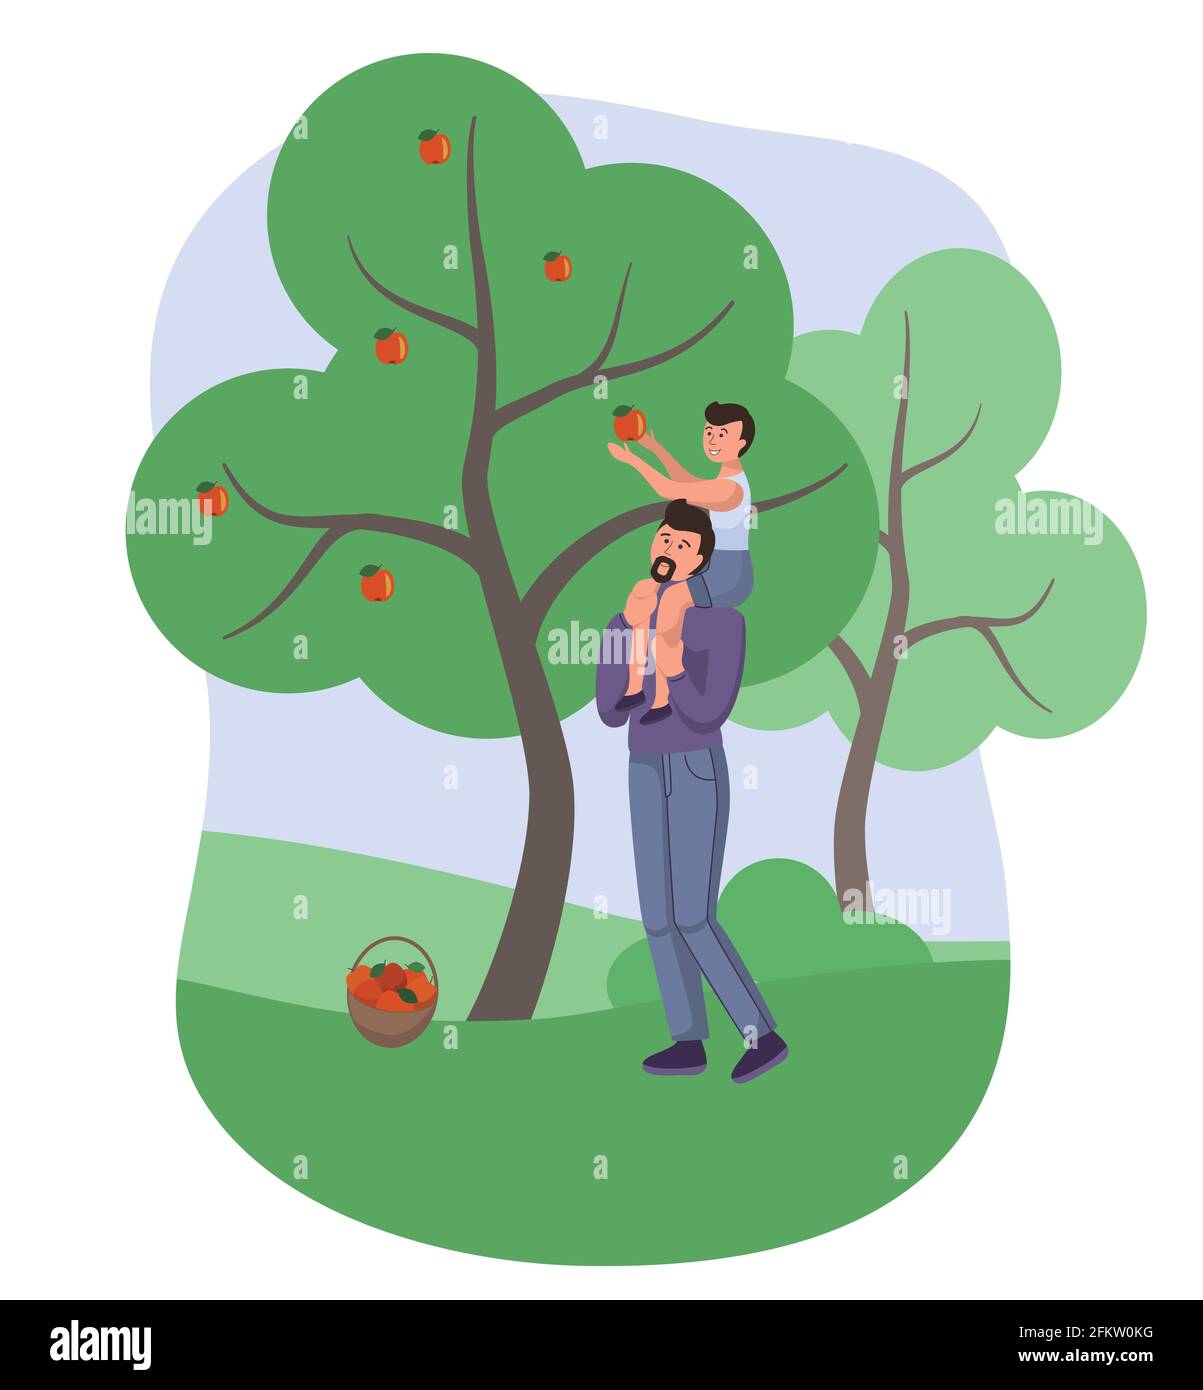 Papa et fils cueillant des pommes dans le jardin, personnage vectoriel. Pommes de récolte Orchard. Agriculture familiale, paternité enfance heureuse Illustration de Vecteur